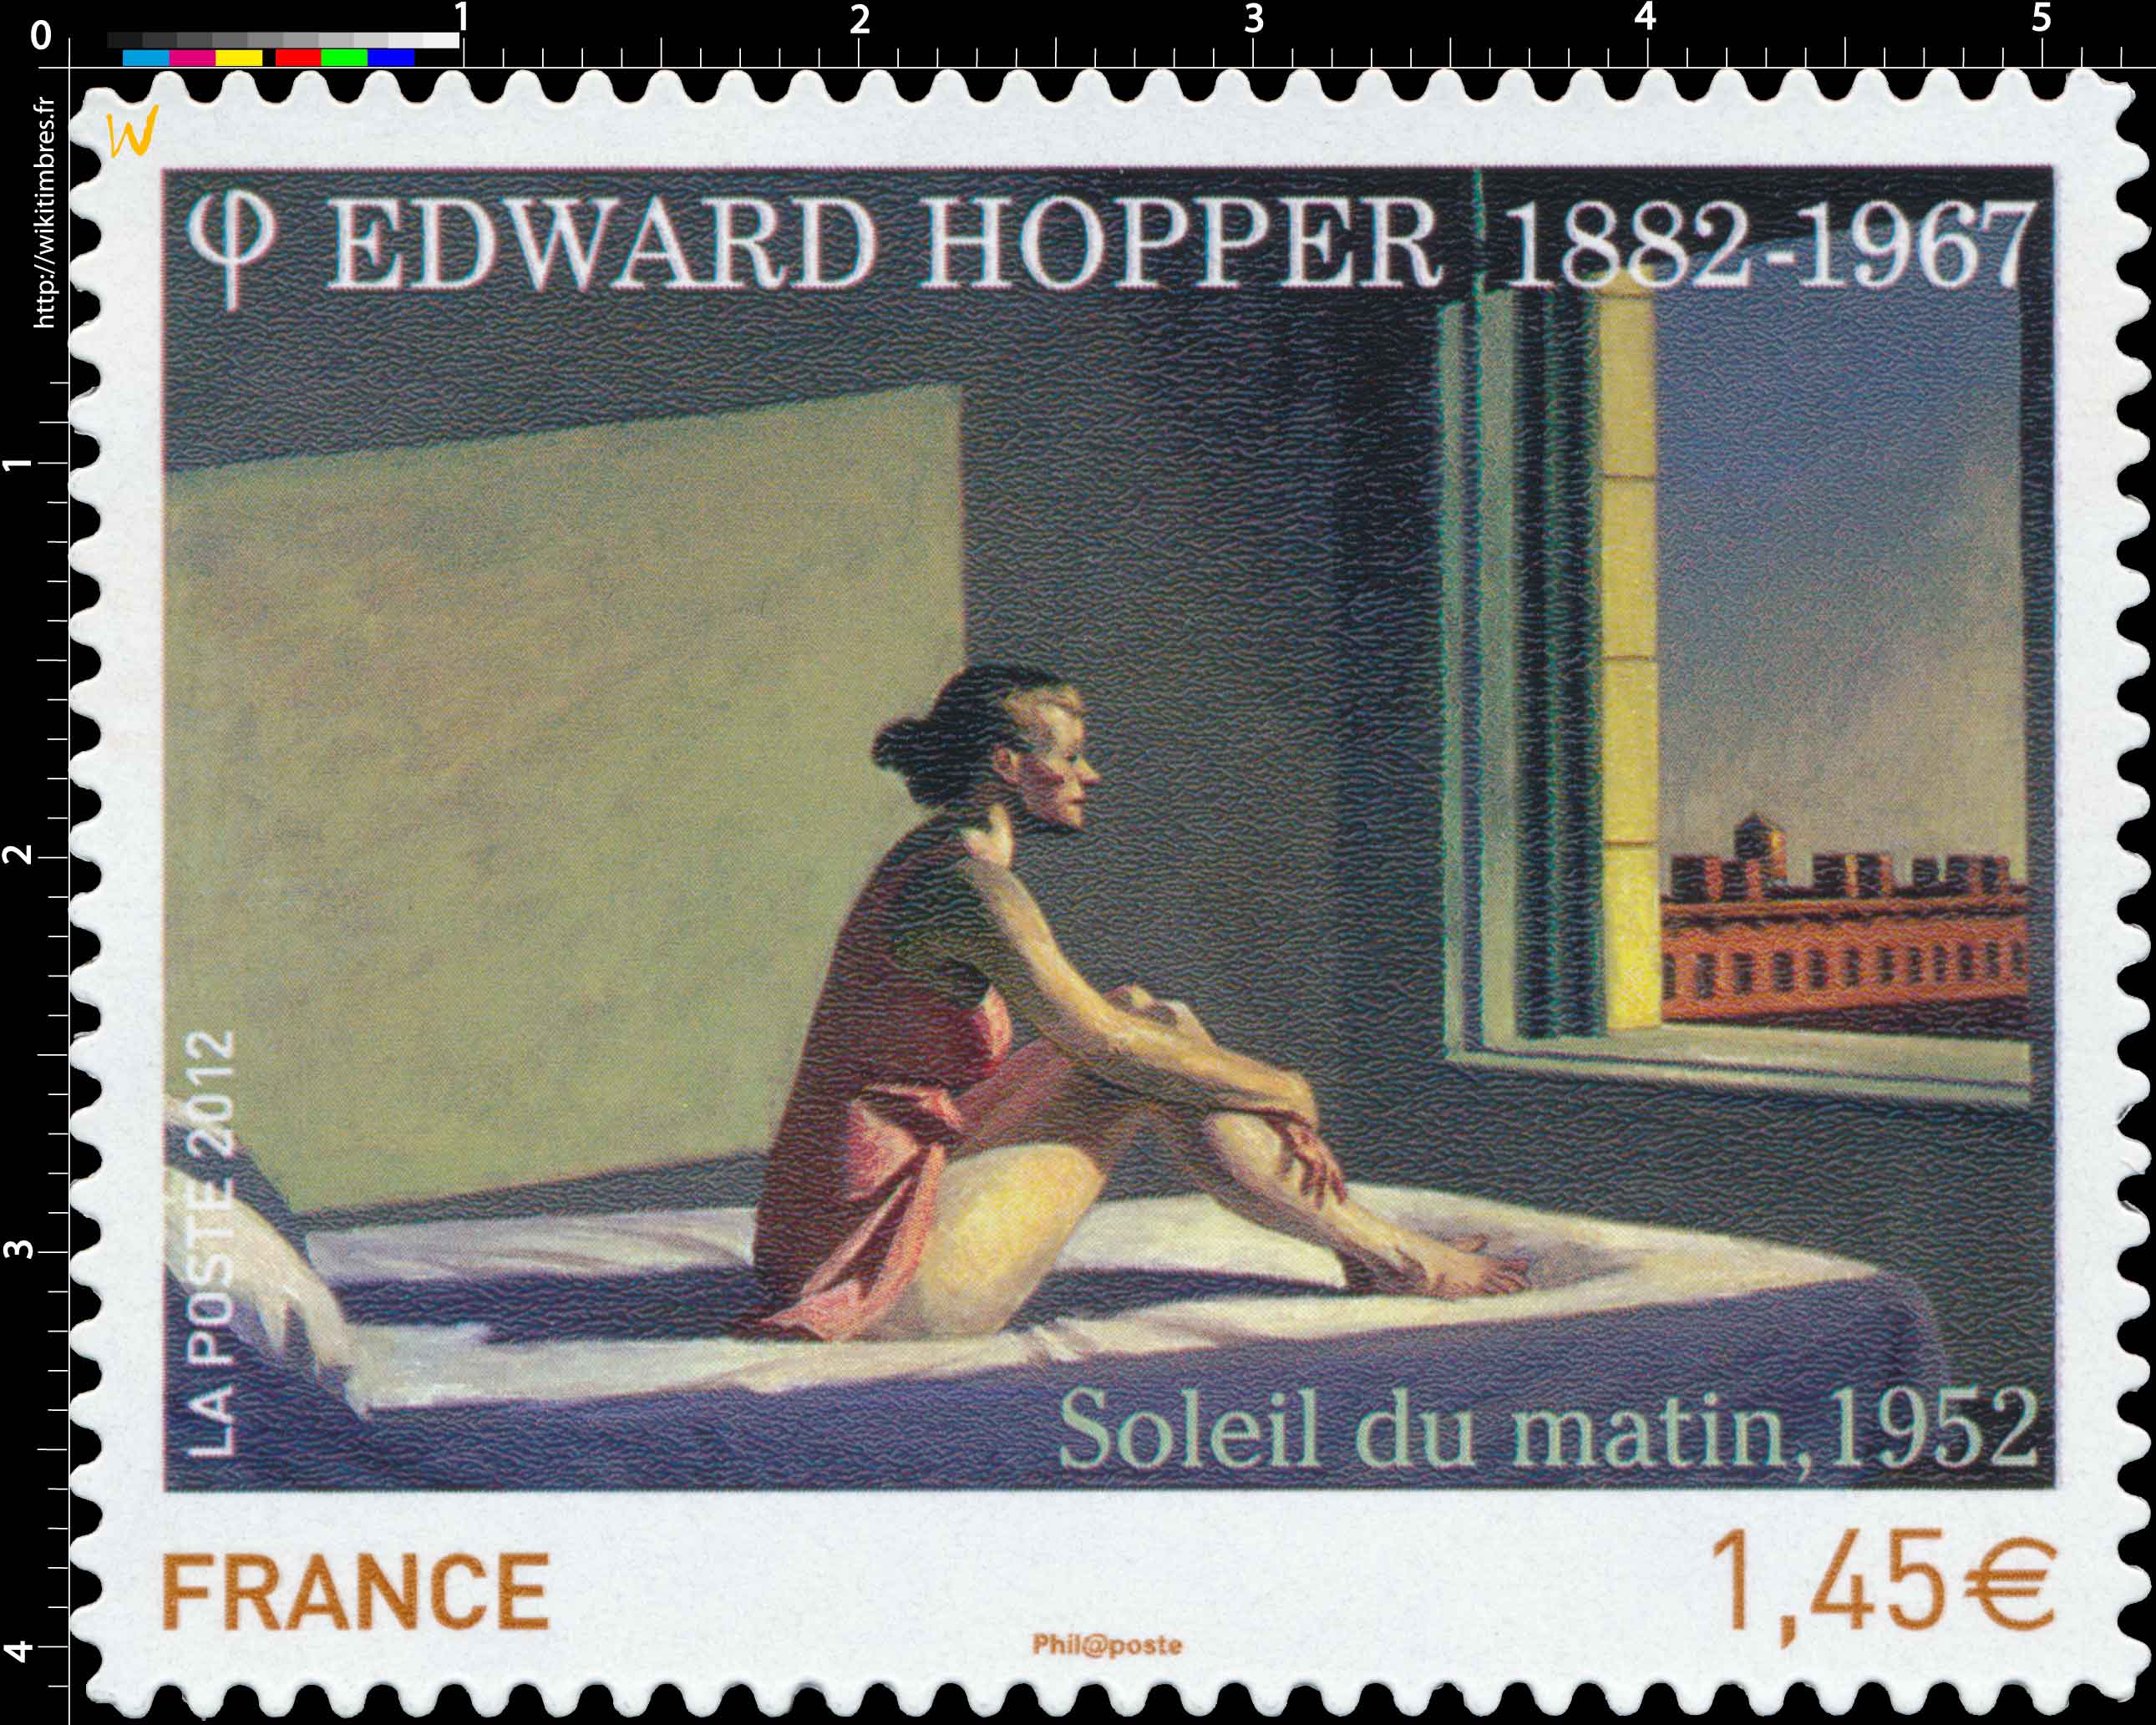 2012 Edward Hopper 1882-1967 Soleil du matin, 1952